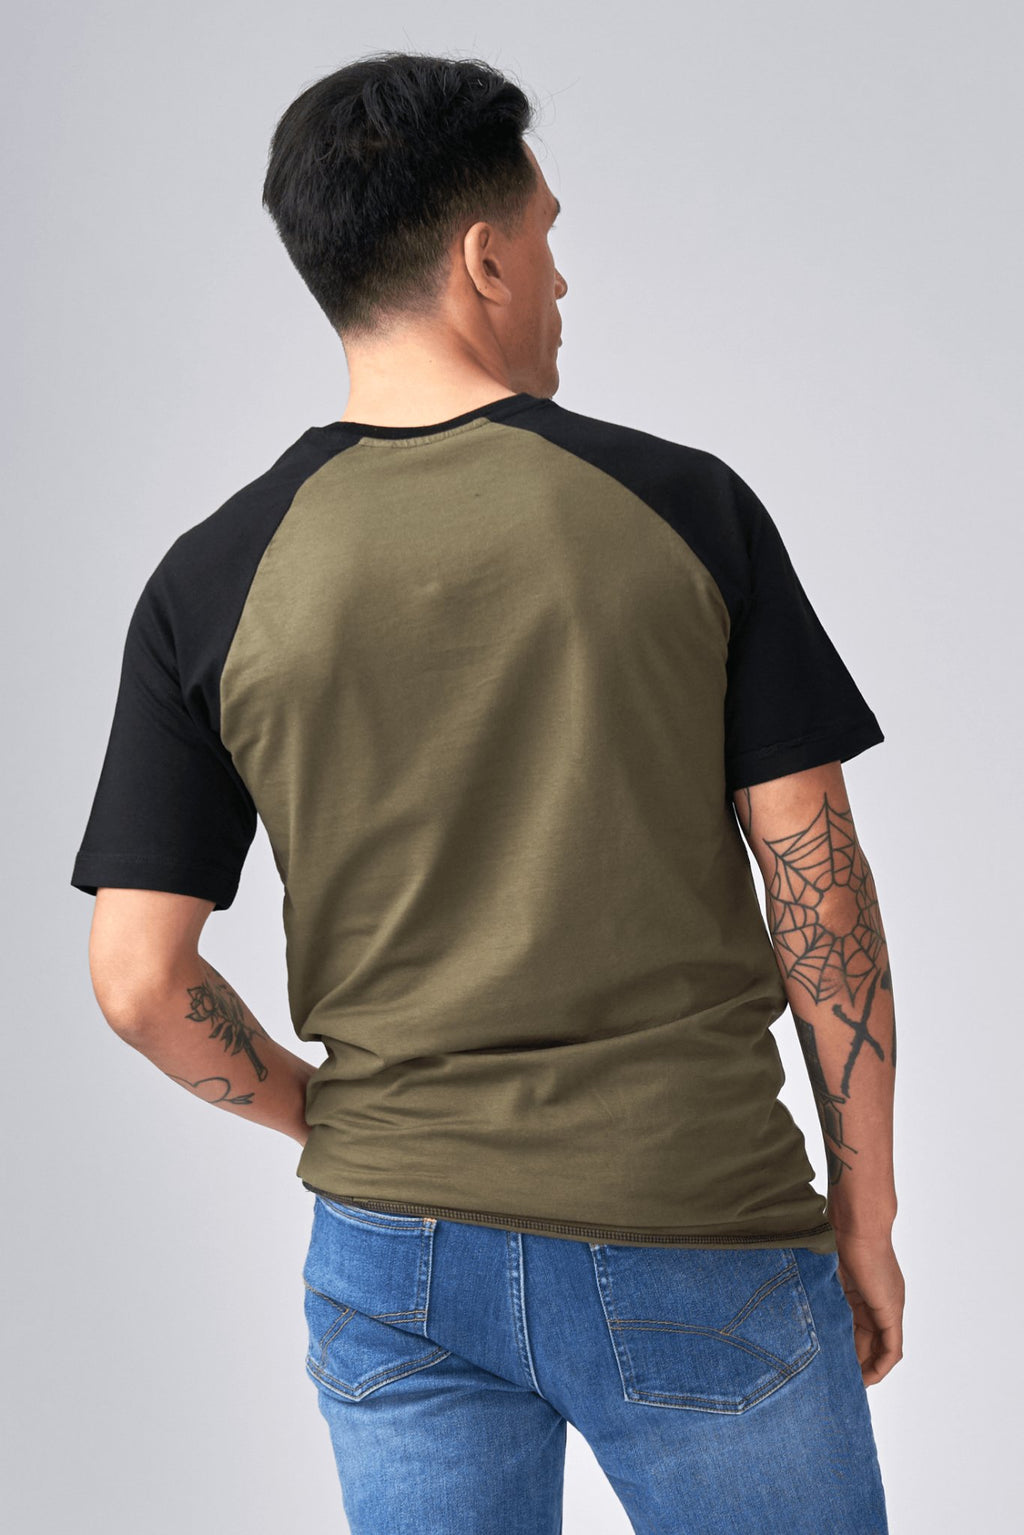 Camiseta básica de Raglan-Army negro